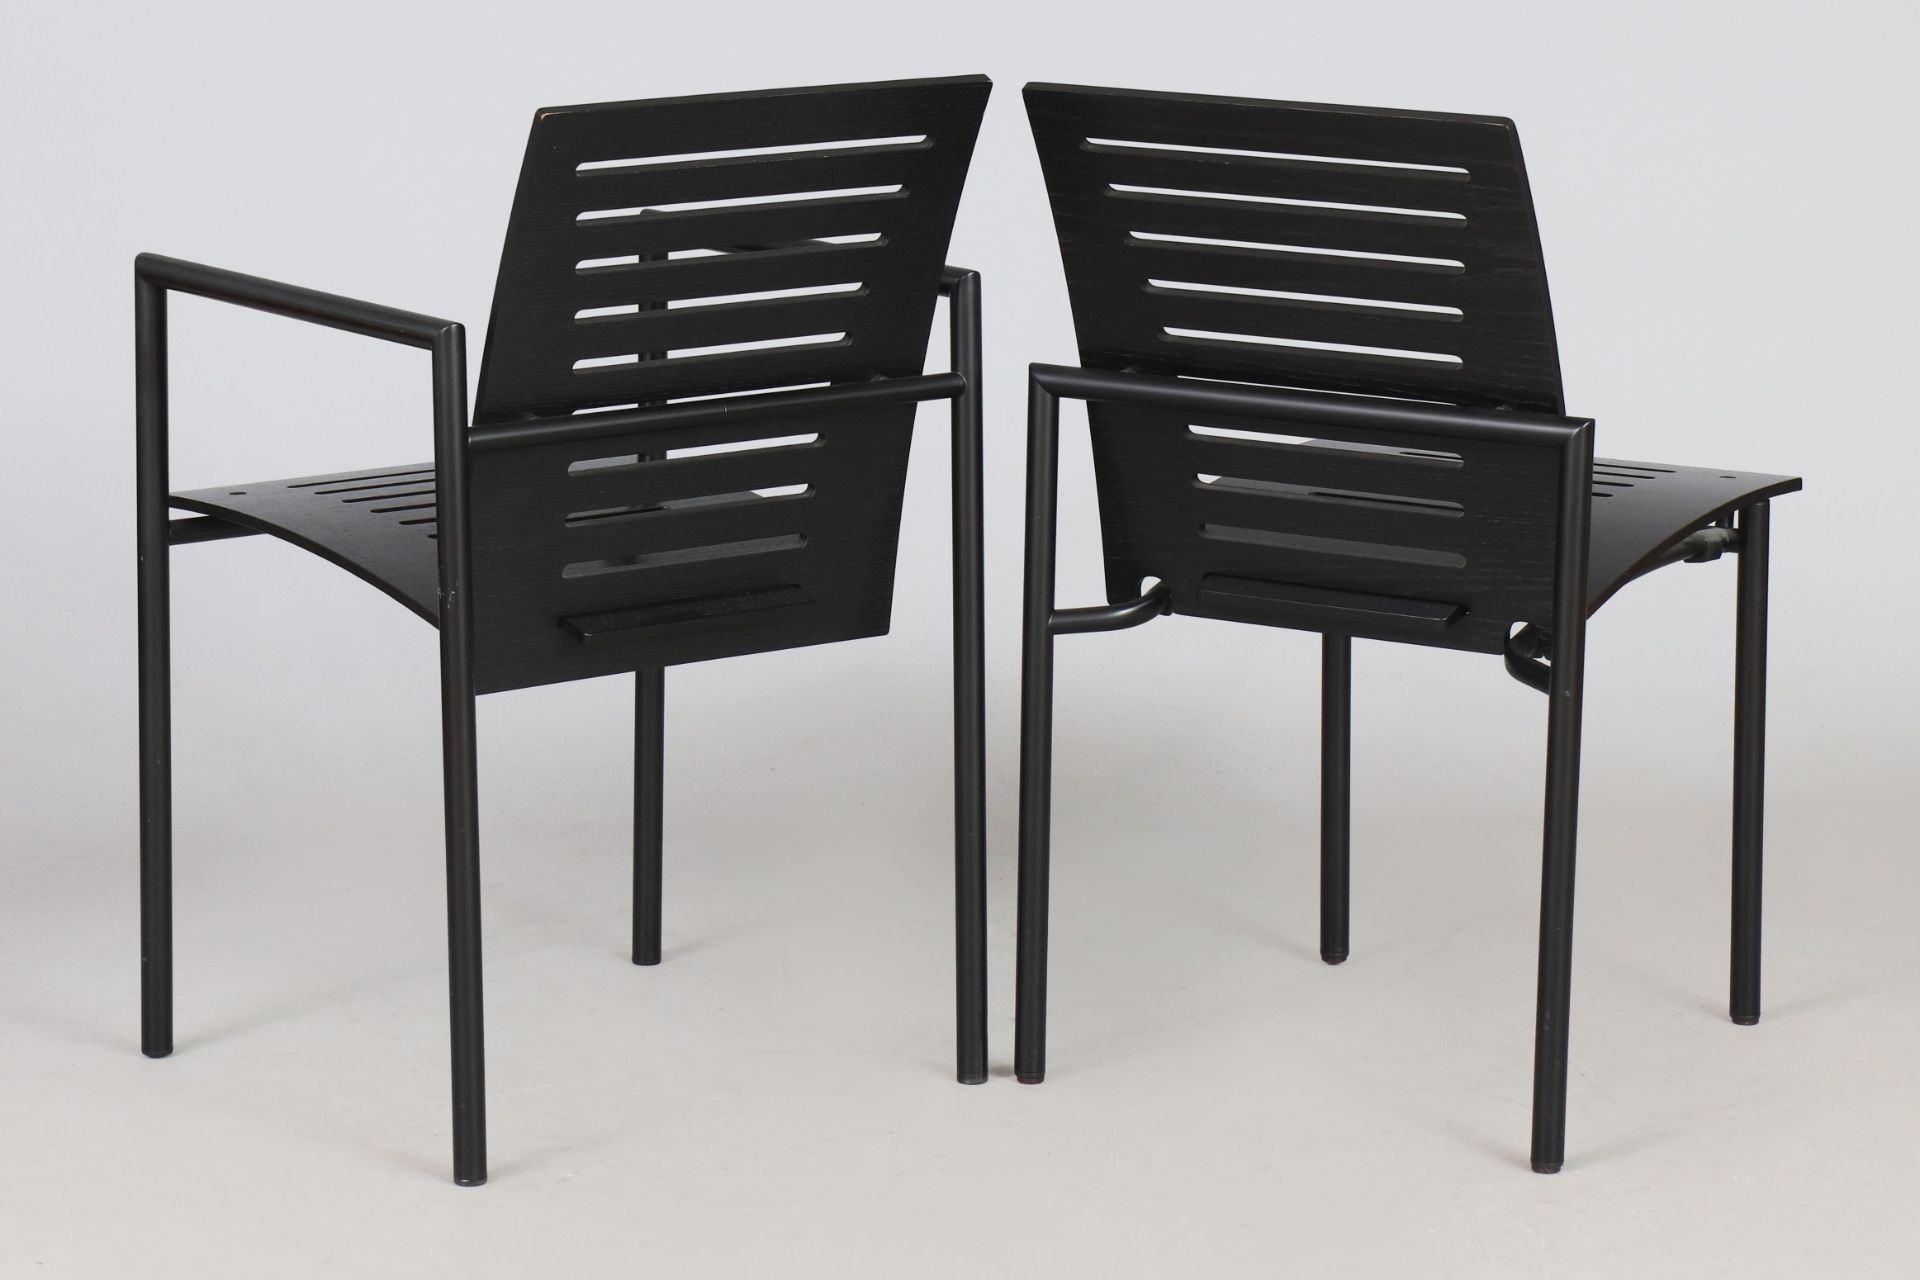 6 Stühle nach Entwurf Thomas Albrecht für ATOLL - Image 3 of 3